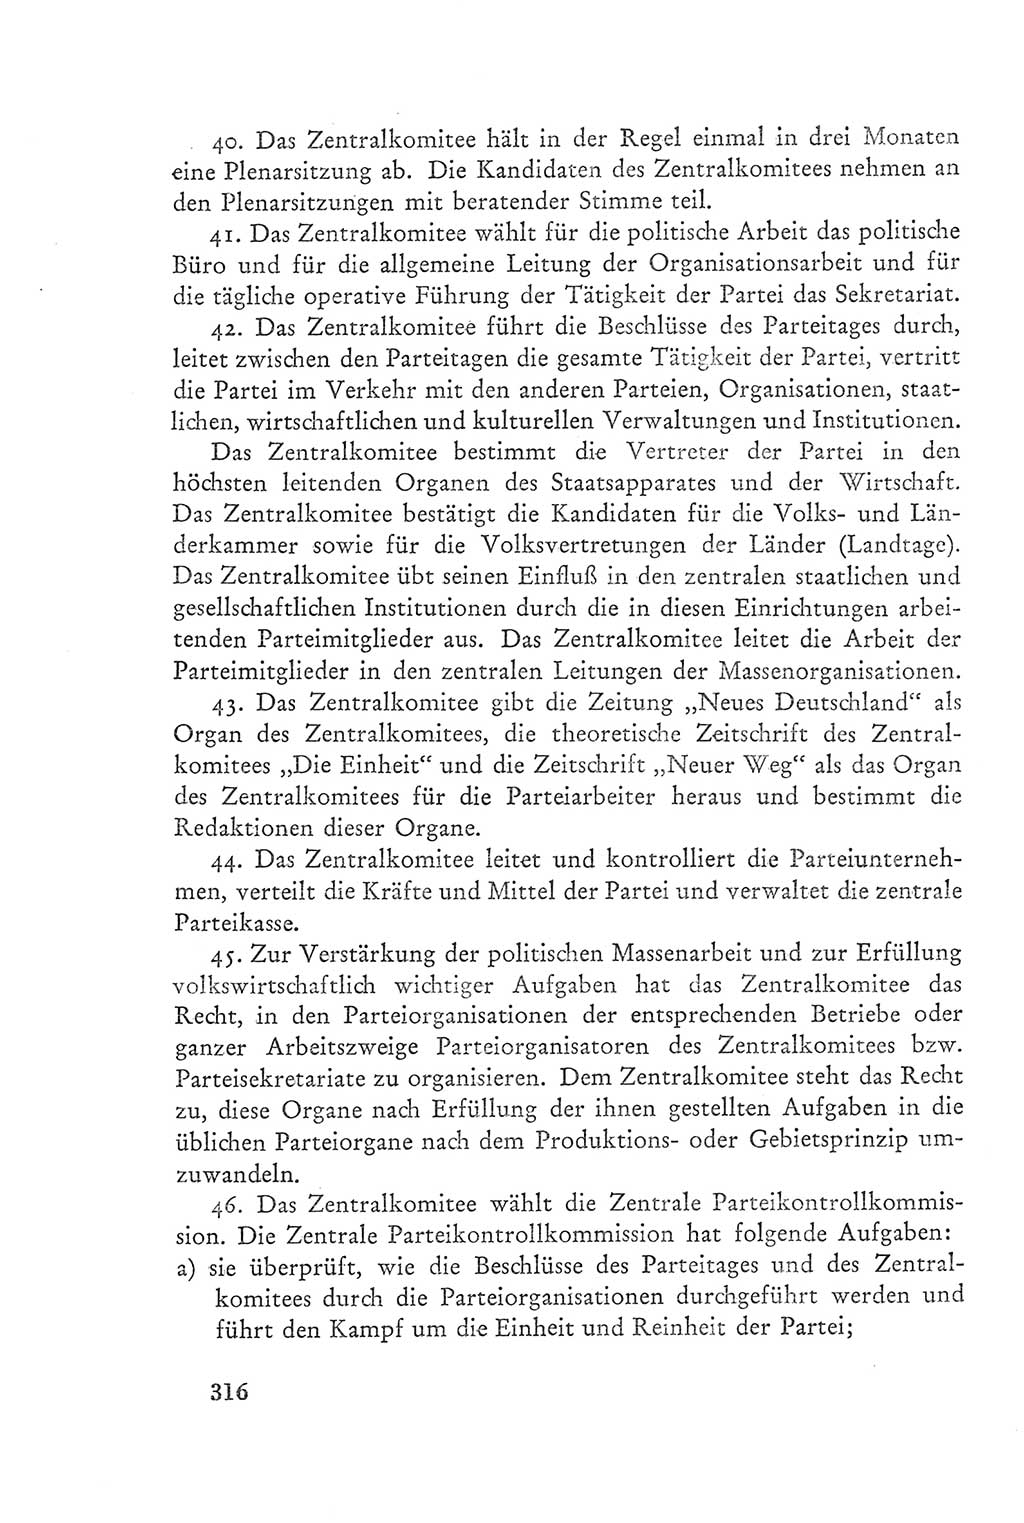 Protokoll der Verhandlungen des Ⅲ. Parteitages der Sozialistischen Einheitspartei Deutschlands (SED) [Deutsche Demokratische Republik (DDR)] 1950, Band 2, Seite 316 (Prot. Verh. Ⅲ. PT SED DDR 1950, Bd. 2, S. 316)